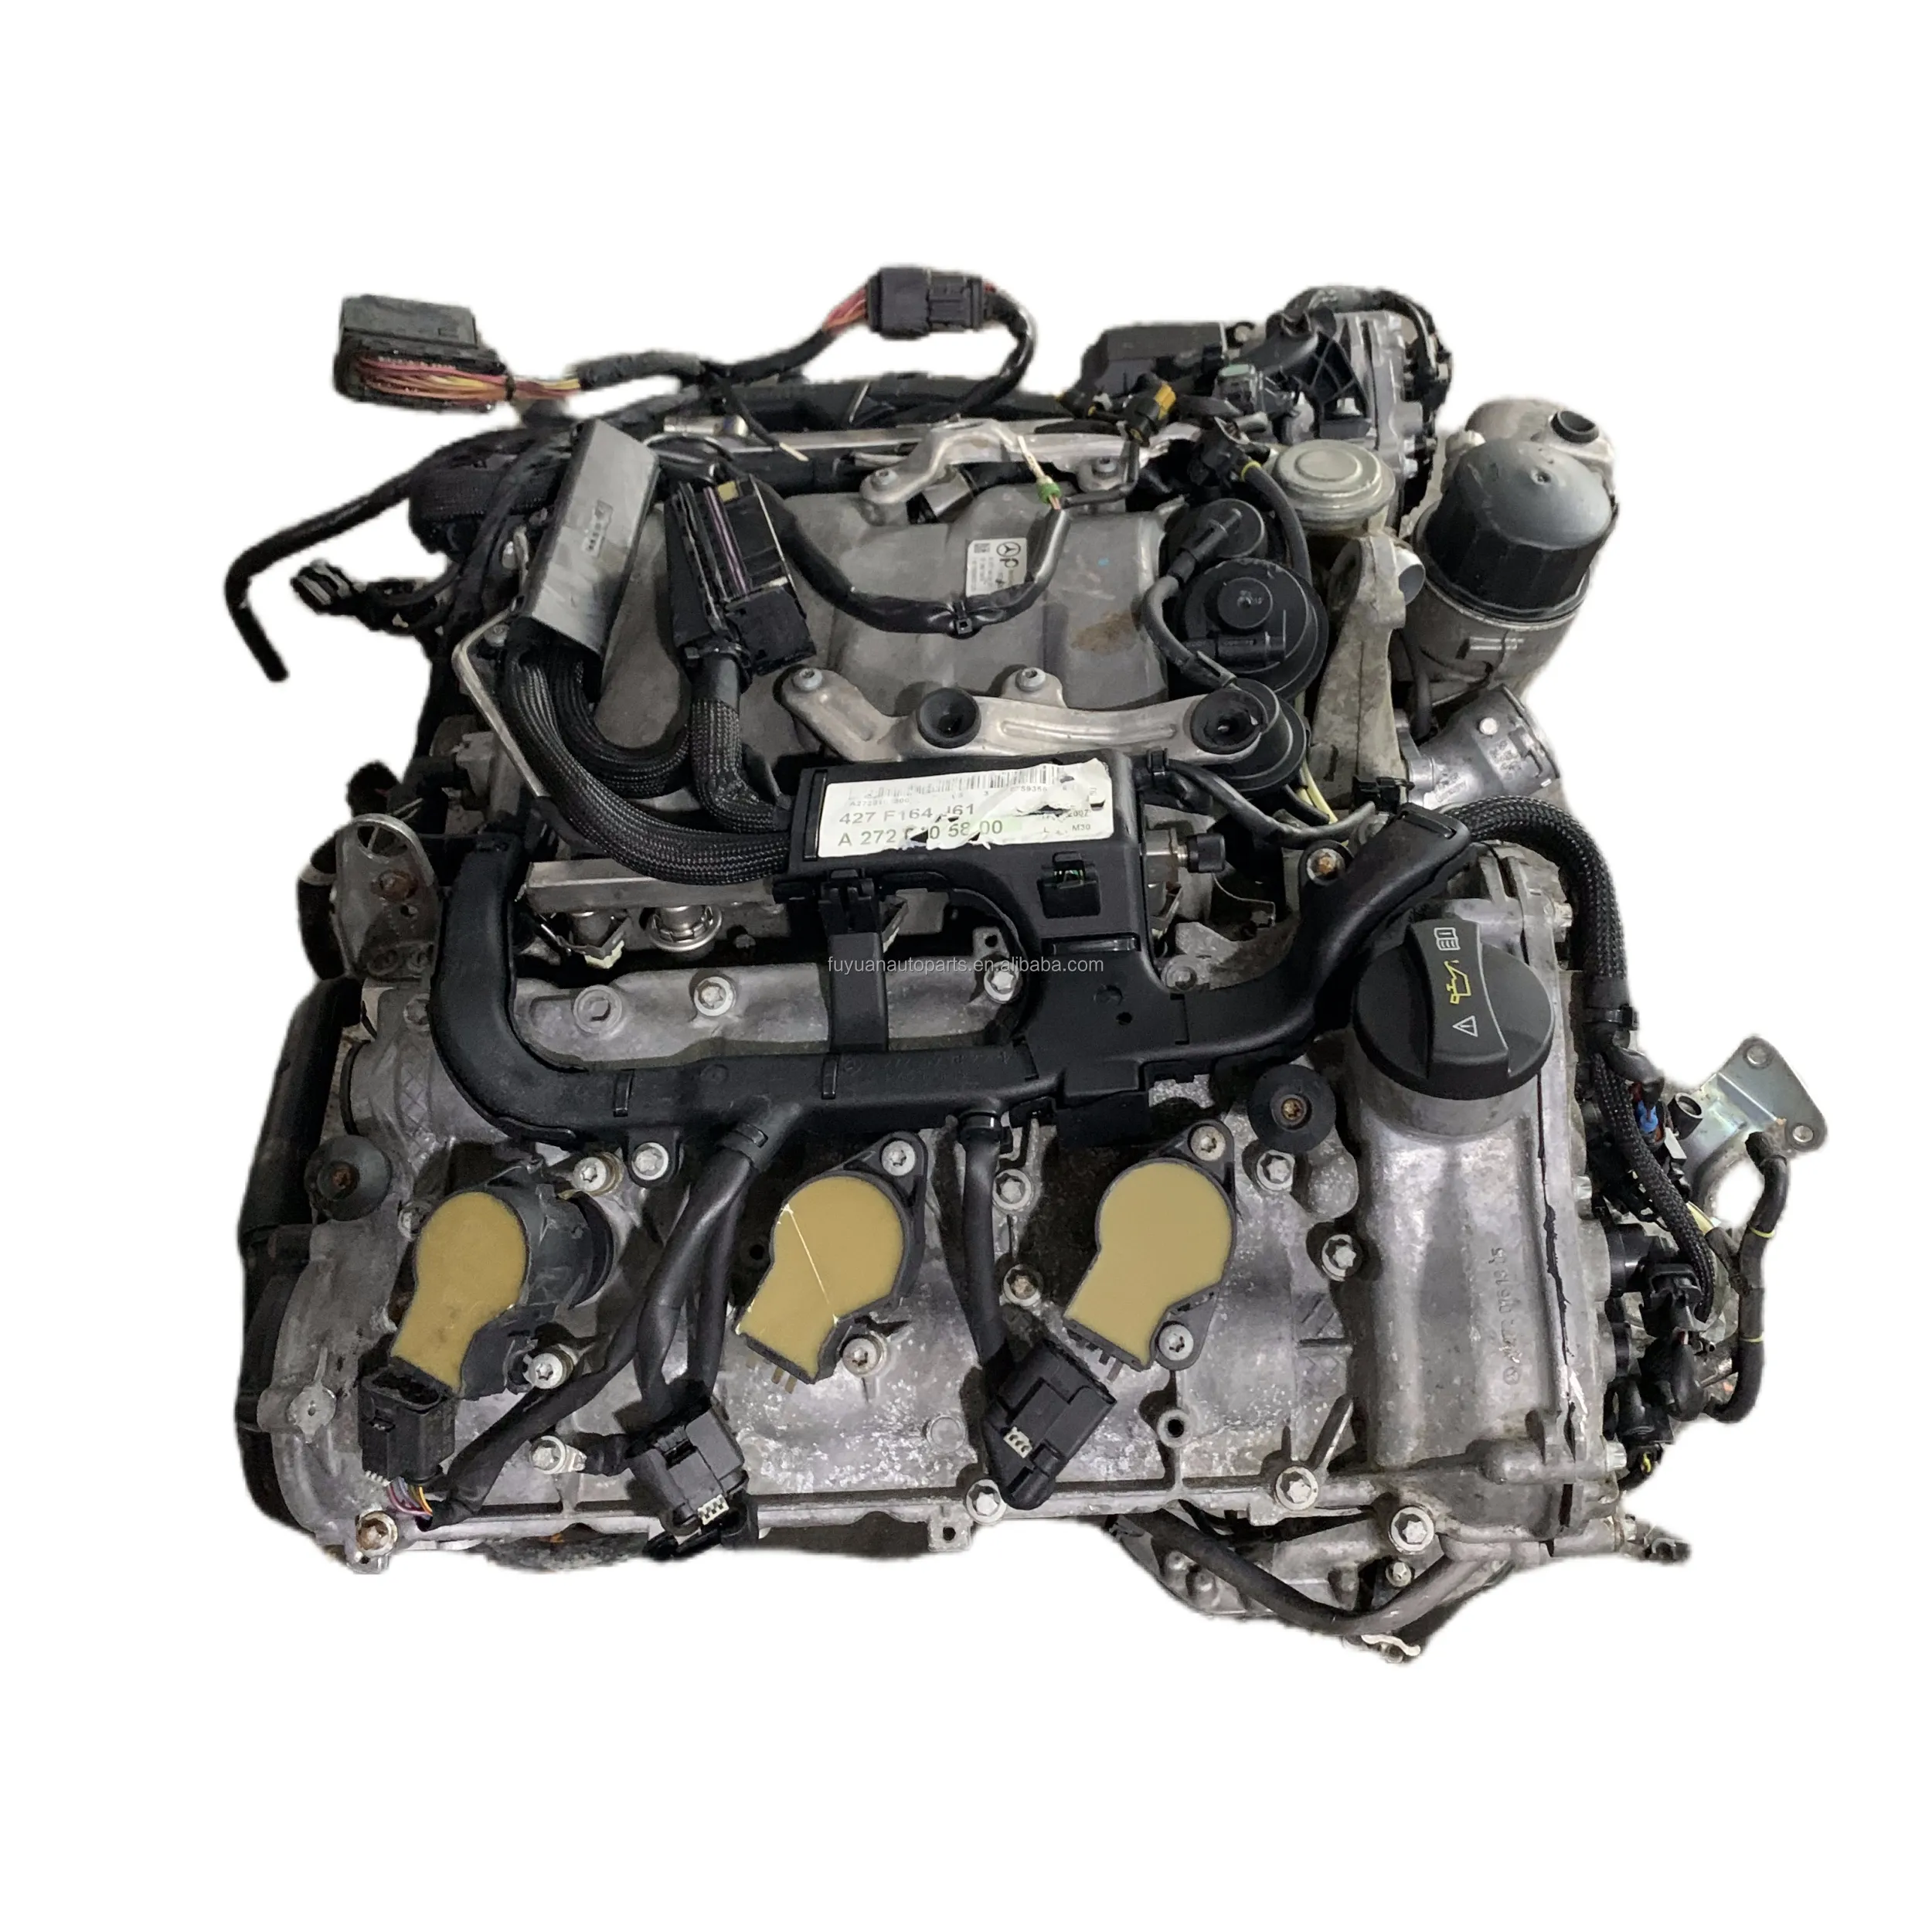 Prix usine original utilisé pour Mercedes Benz 272 moteur 221 W220 GL450 GL550 S500 S600 ML350 272 système moteur V6 moteur